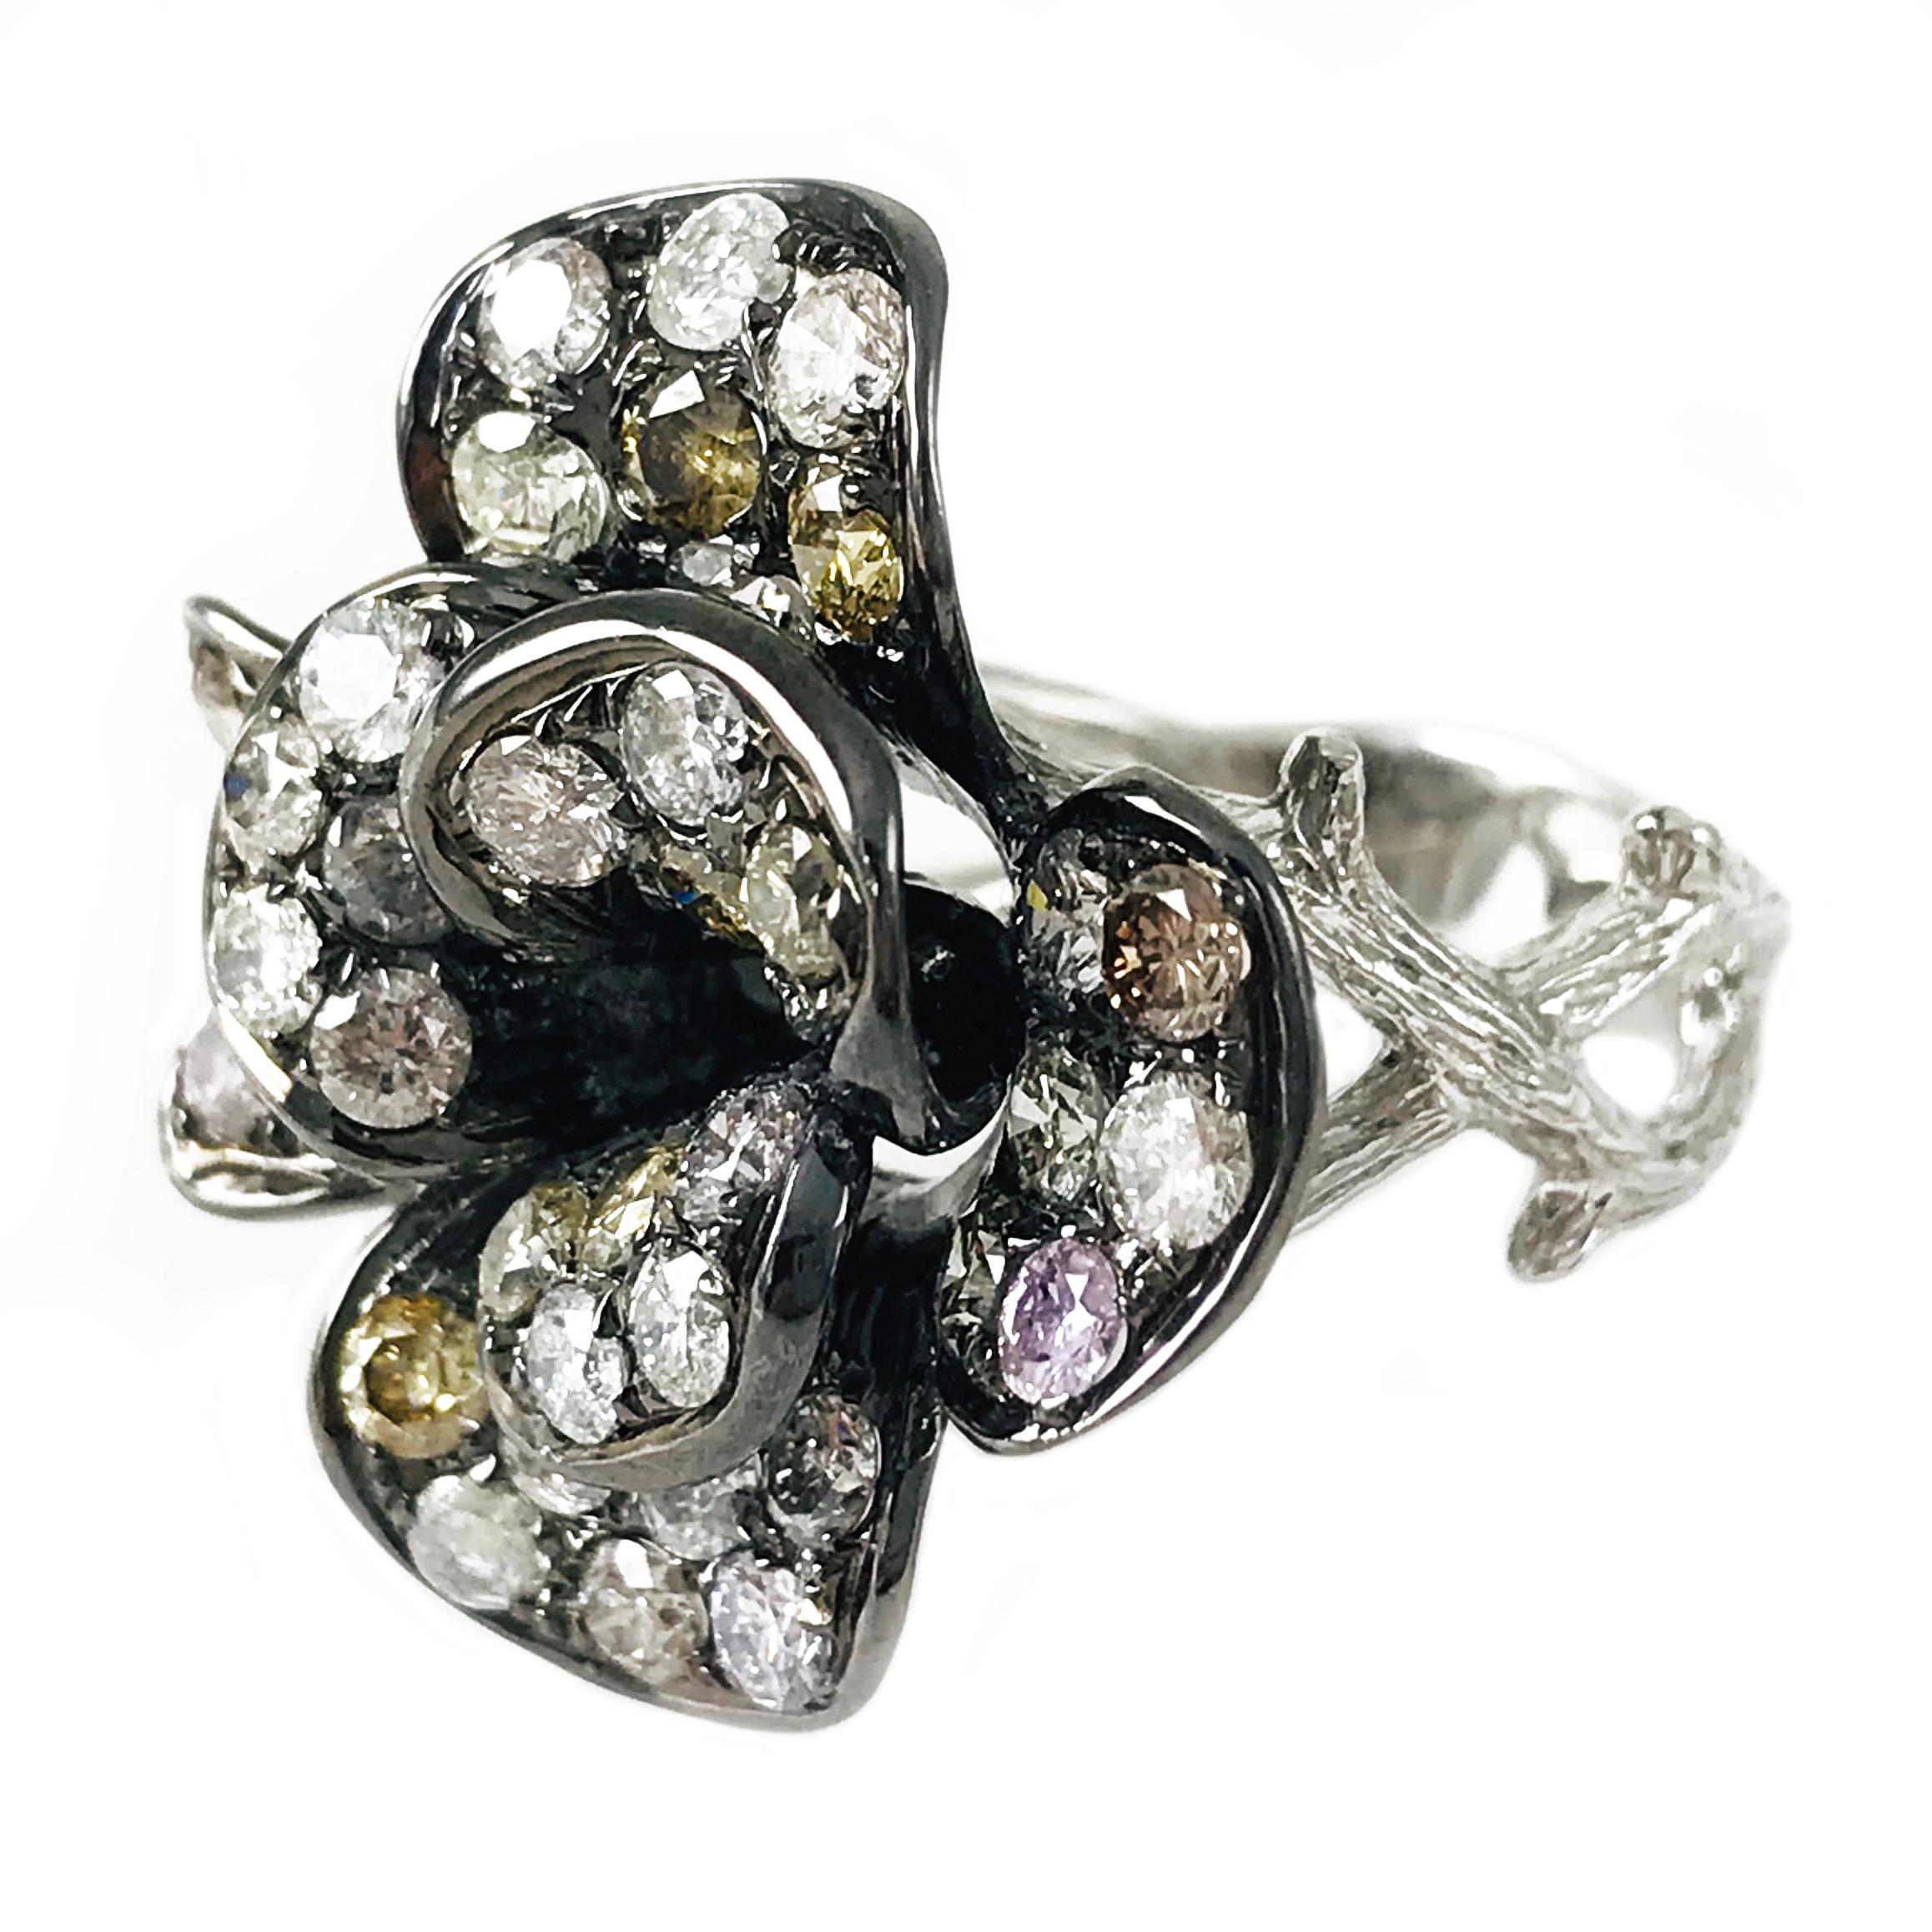 Zweifarbiger 14-Karat-Diamant-Blumenring mit schwarzem Rhodium-Finish zur Betonung der verschiedenen Farbtöne der natürlichen Diamanten. Der einzigartige und schöne Ring besteht aus zwei Reihen von Blütenblättern mit weißen, rosa, gelben und